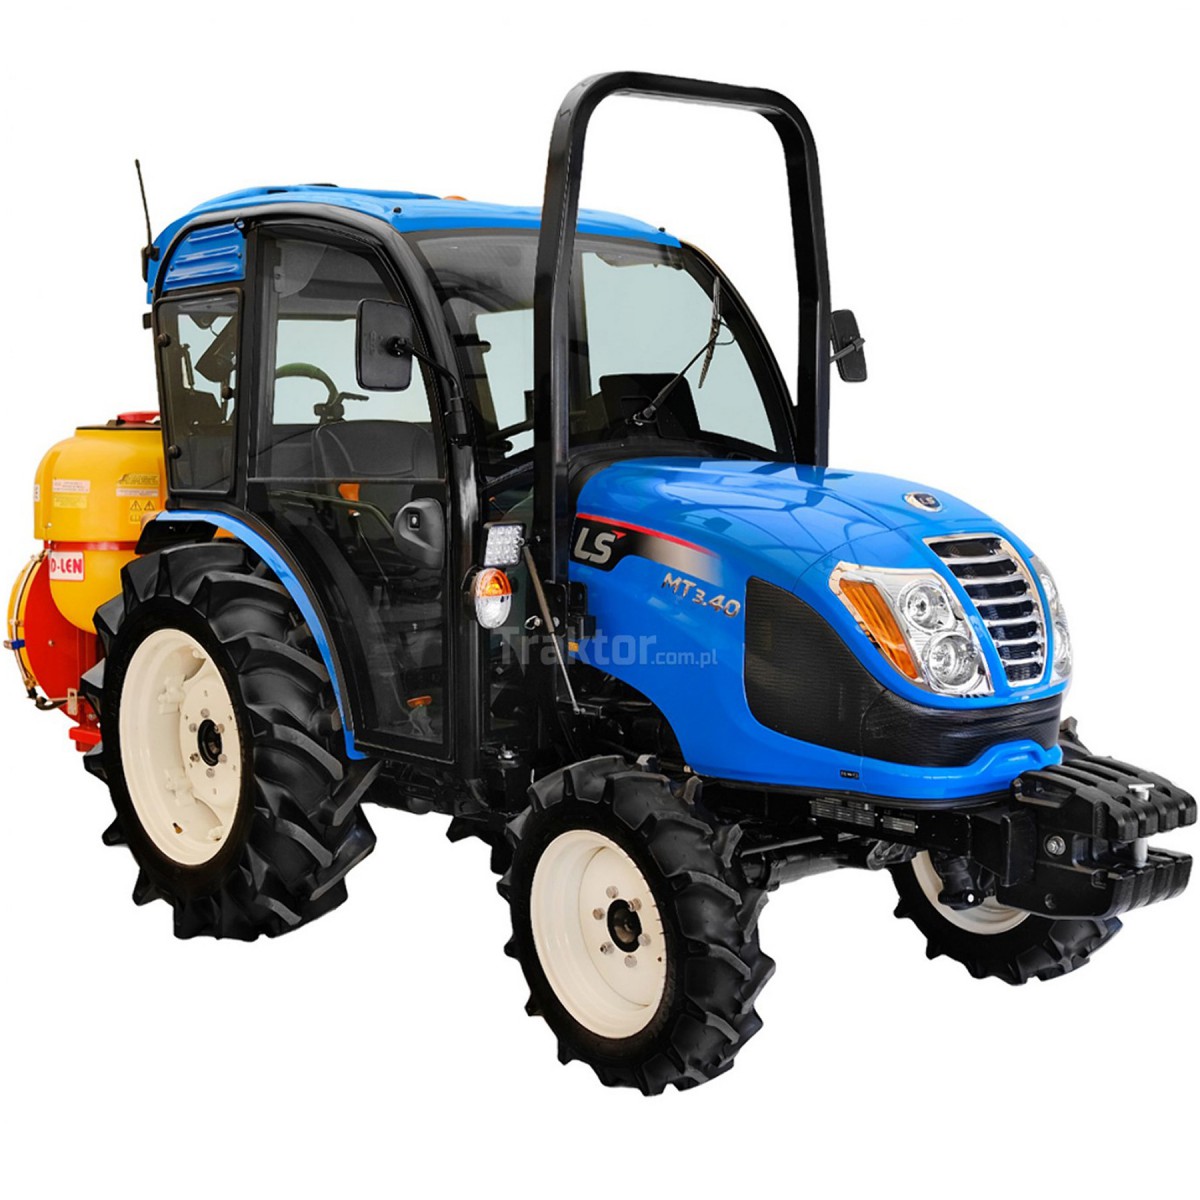 LS-Traktor MT3.40 MEC 4x4 - 40 PS / Kabine mit Klimaanlage + TAD-LEN-Obstgartenspritze